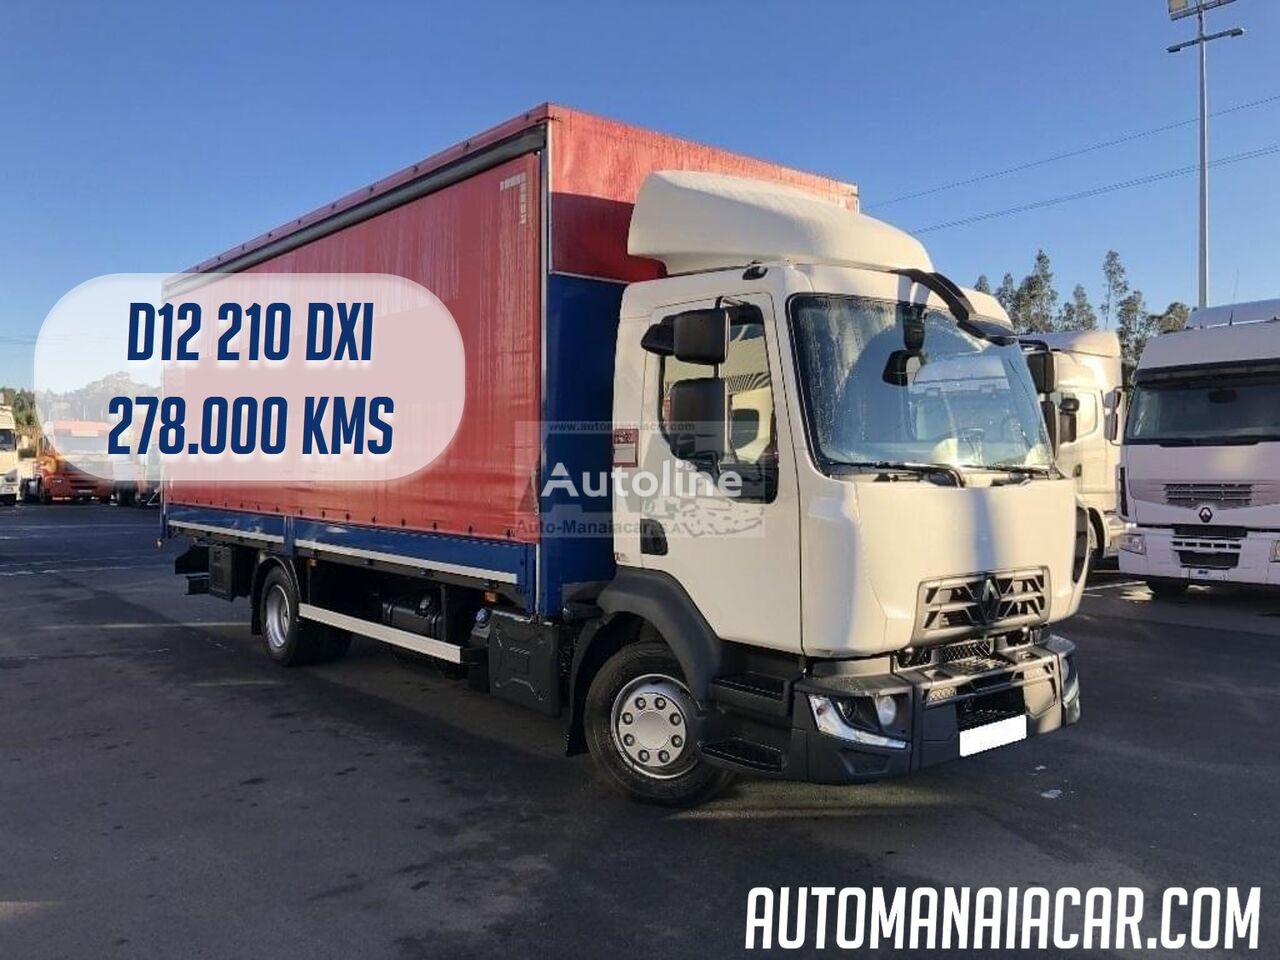 грузовик штора Renault D12 210 DXI EURO6 278.000 KMS